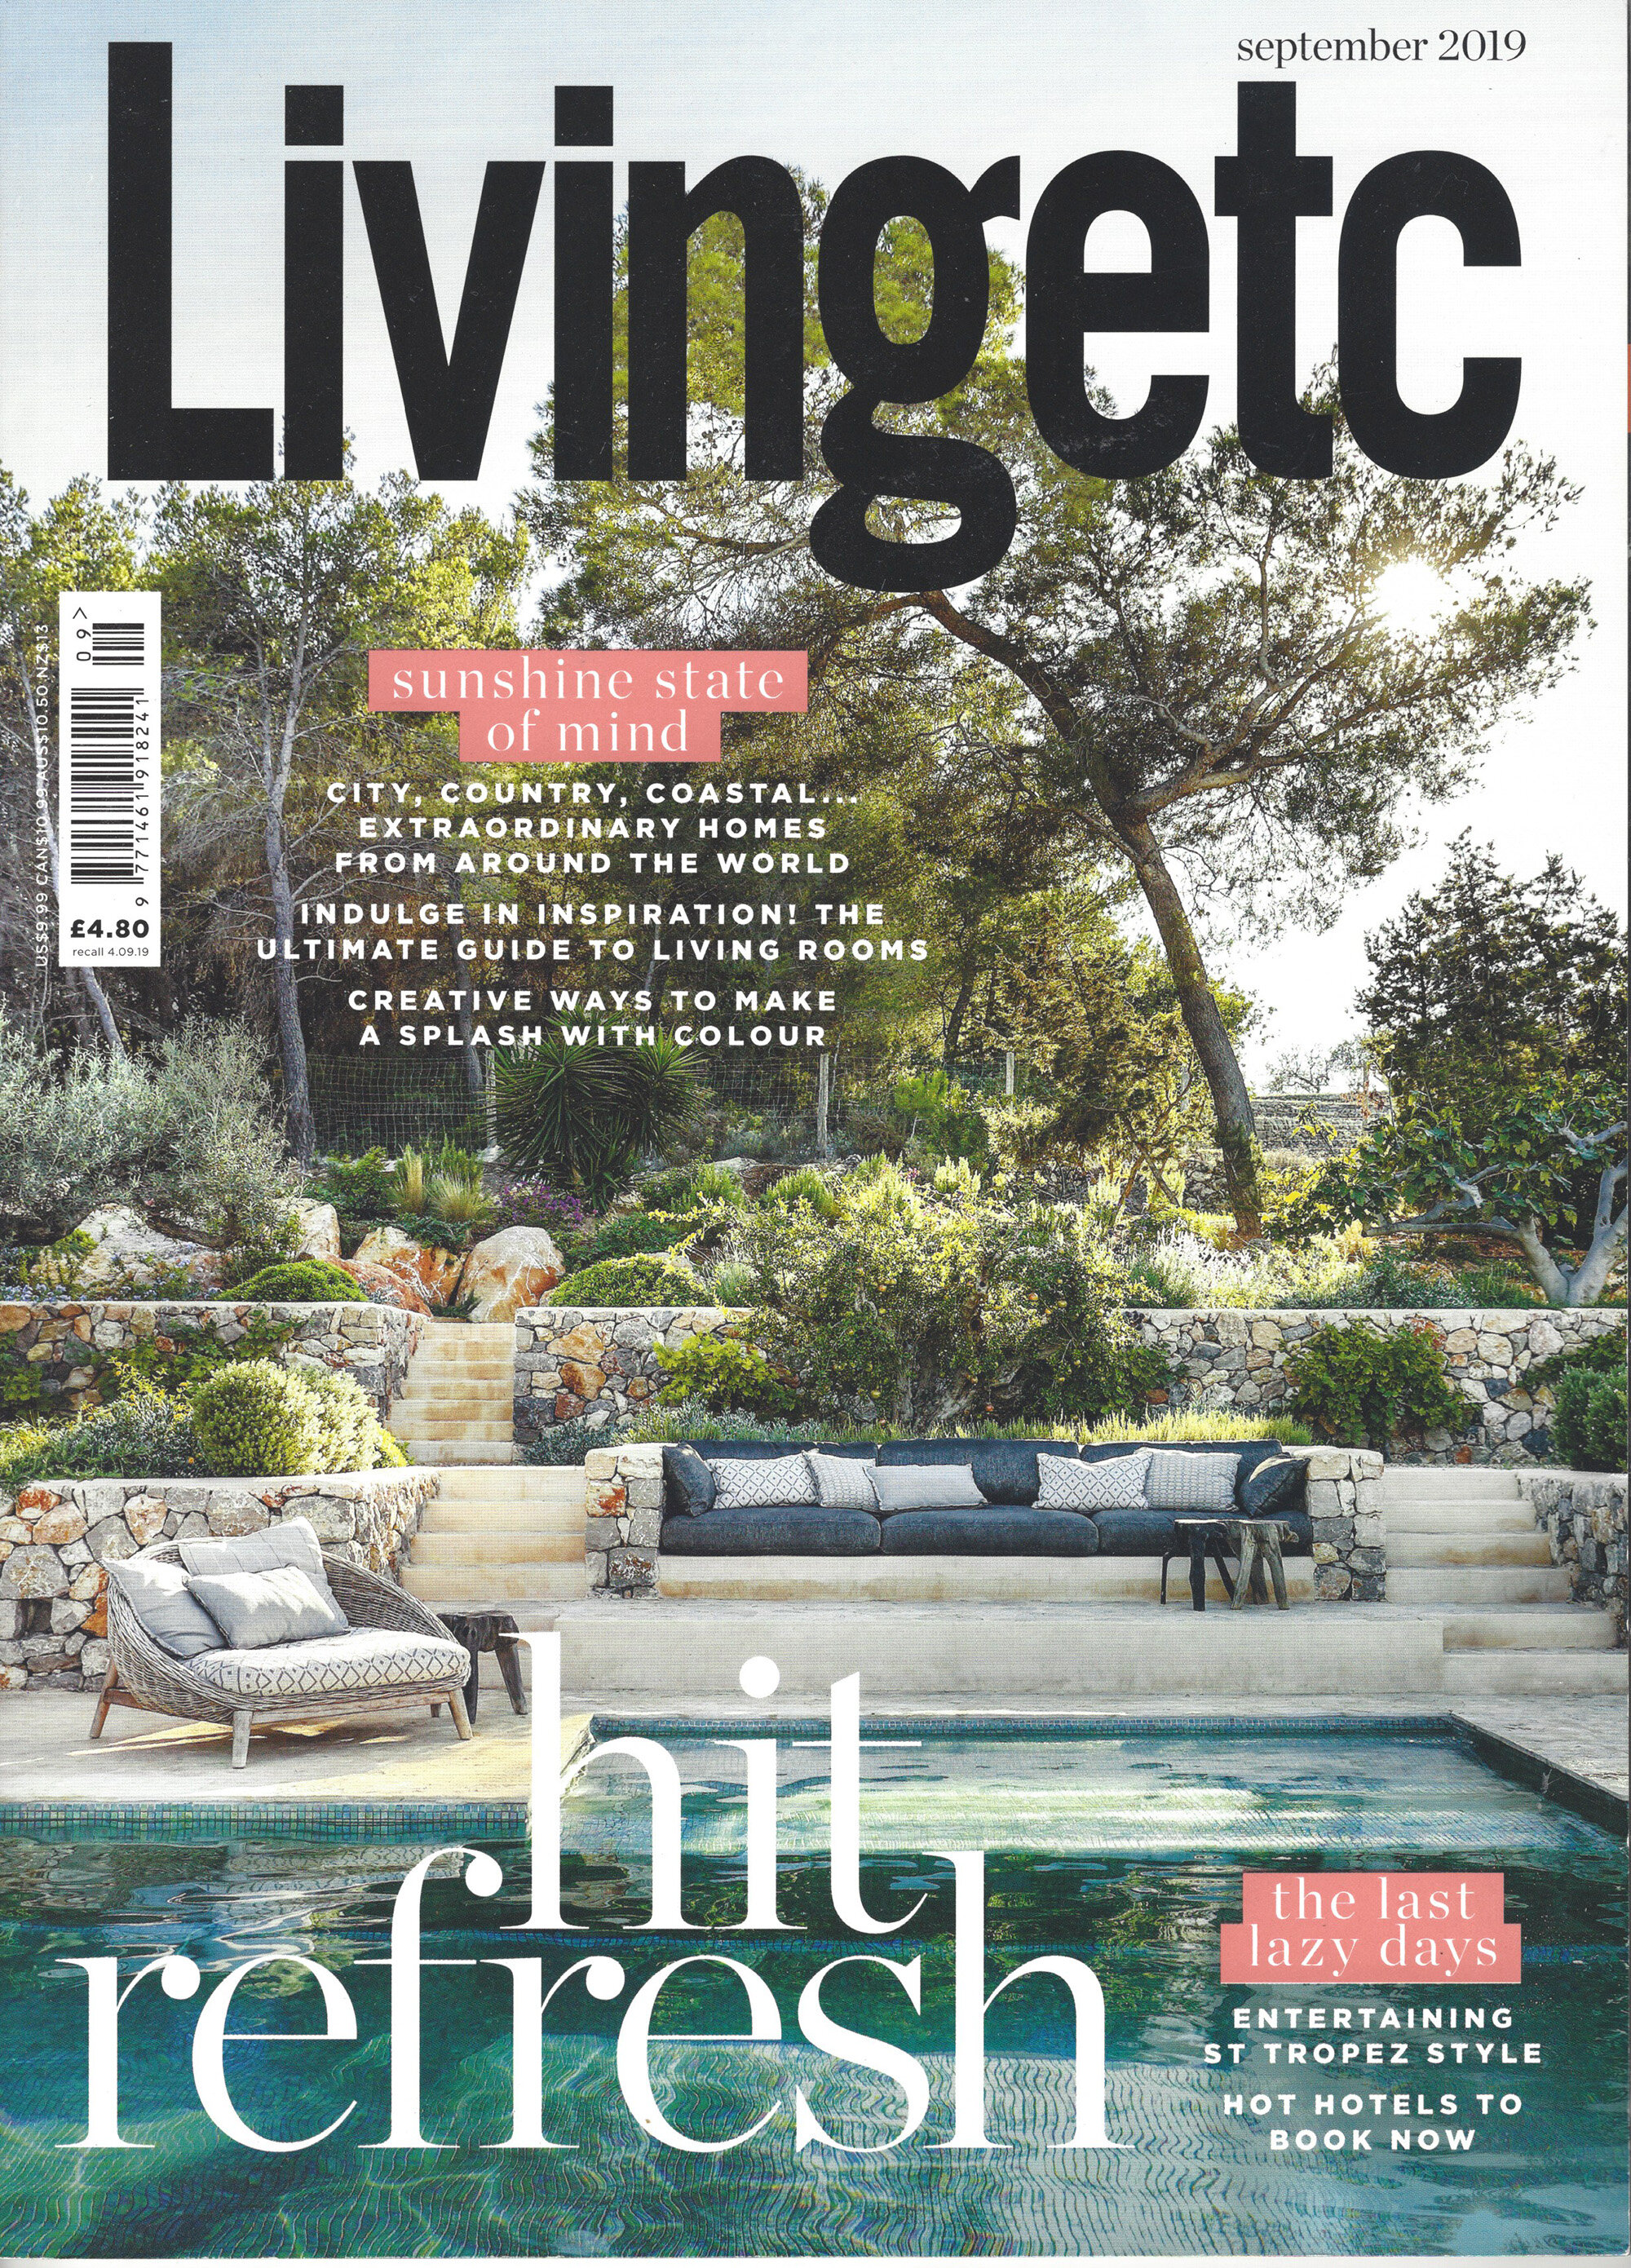 Living etc Sept 19 cover copy.jpg